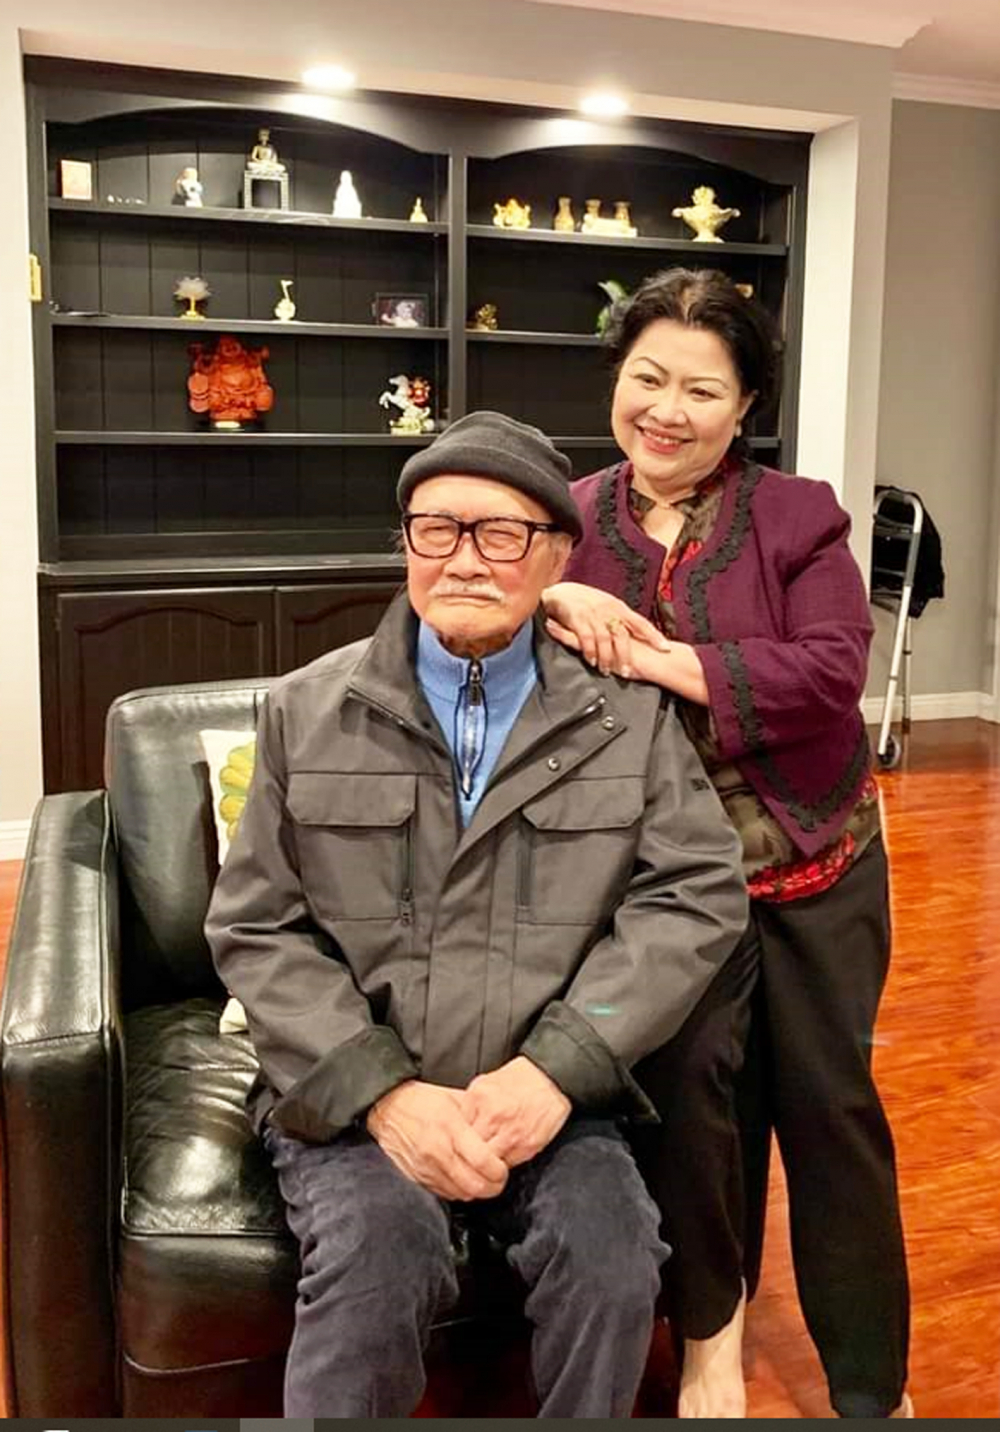 Nghệ sĩ nhân dân Diệp Lang  những năm cuối đời bên người vợ  - bà Phạm Thu Phong - rất mực thương yêu ông - Ảnh: gia đình cung cấp